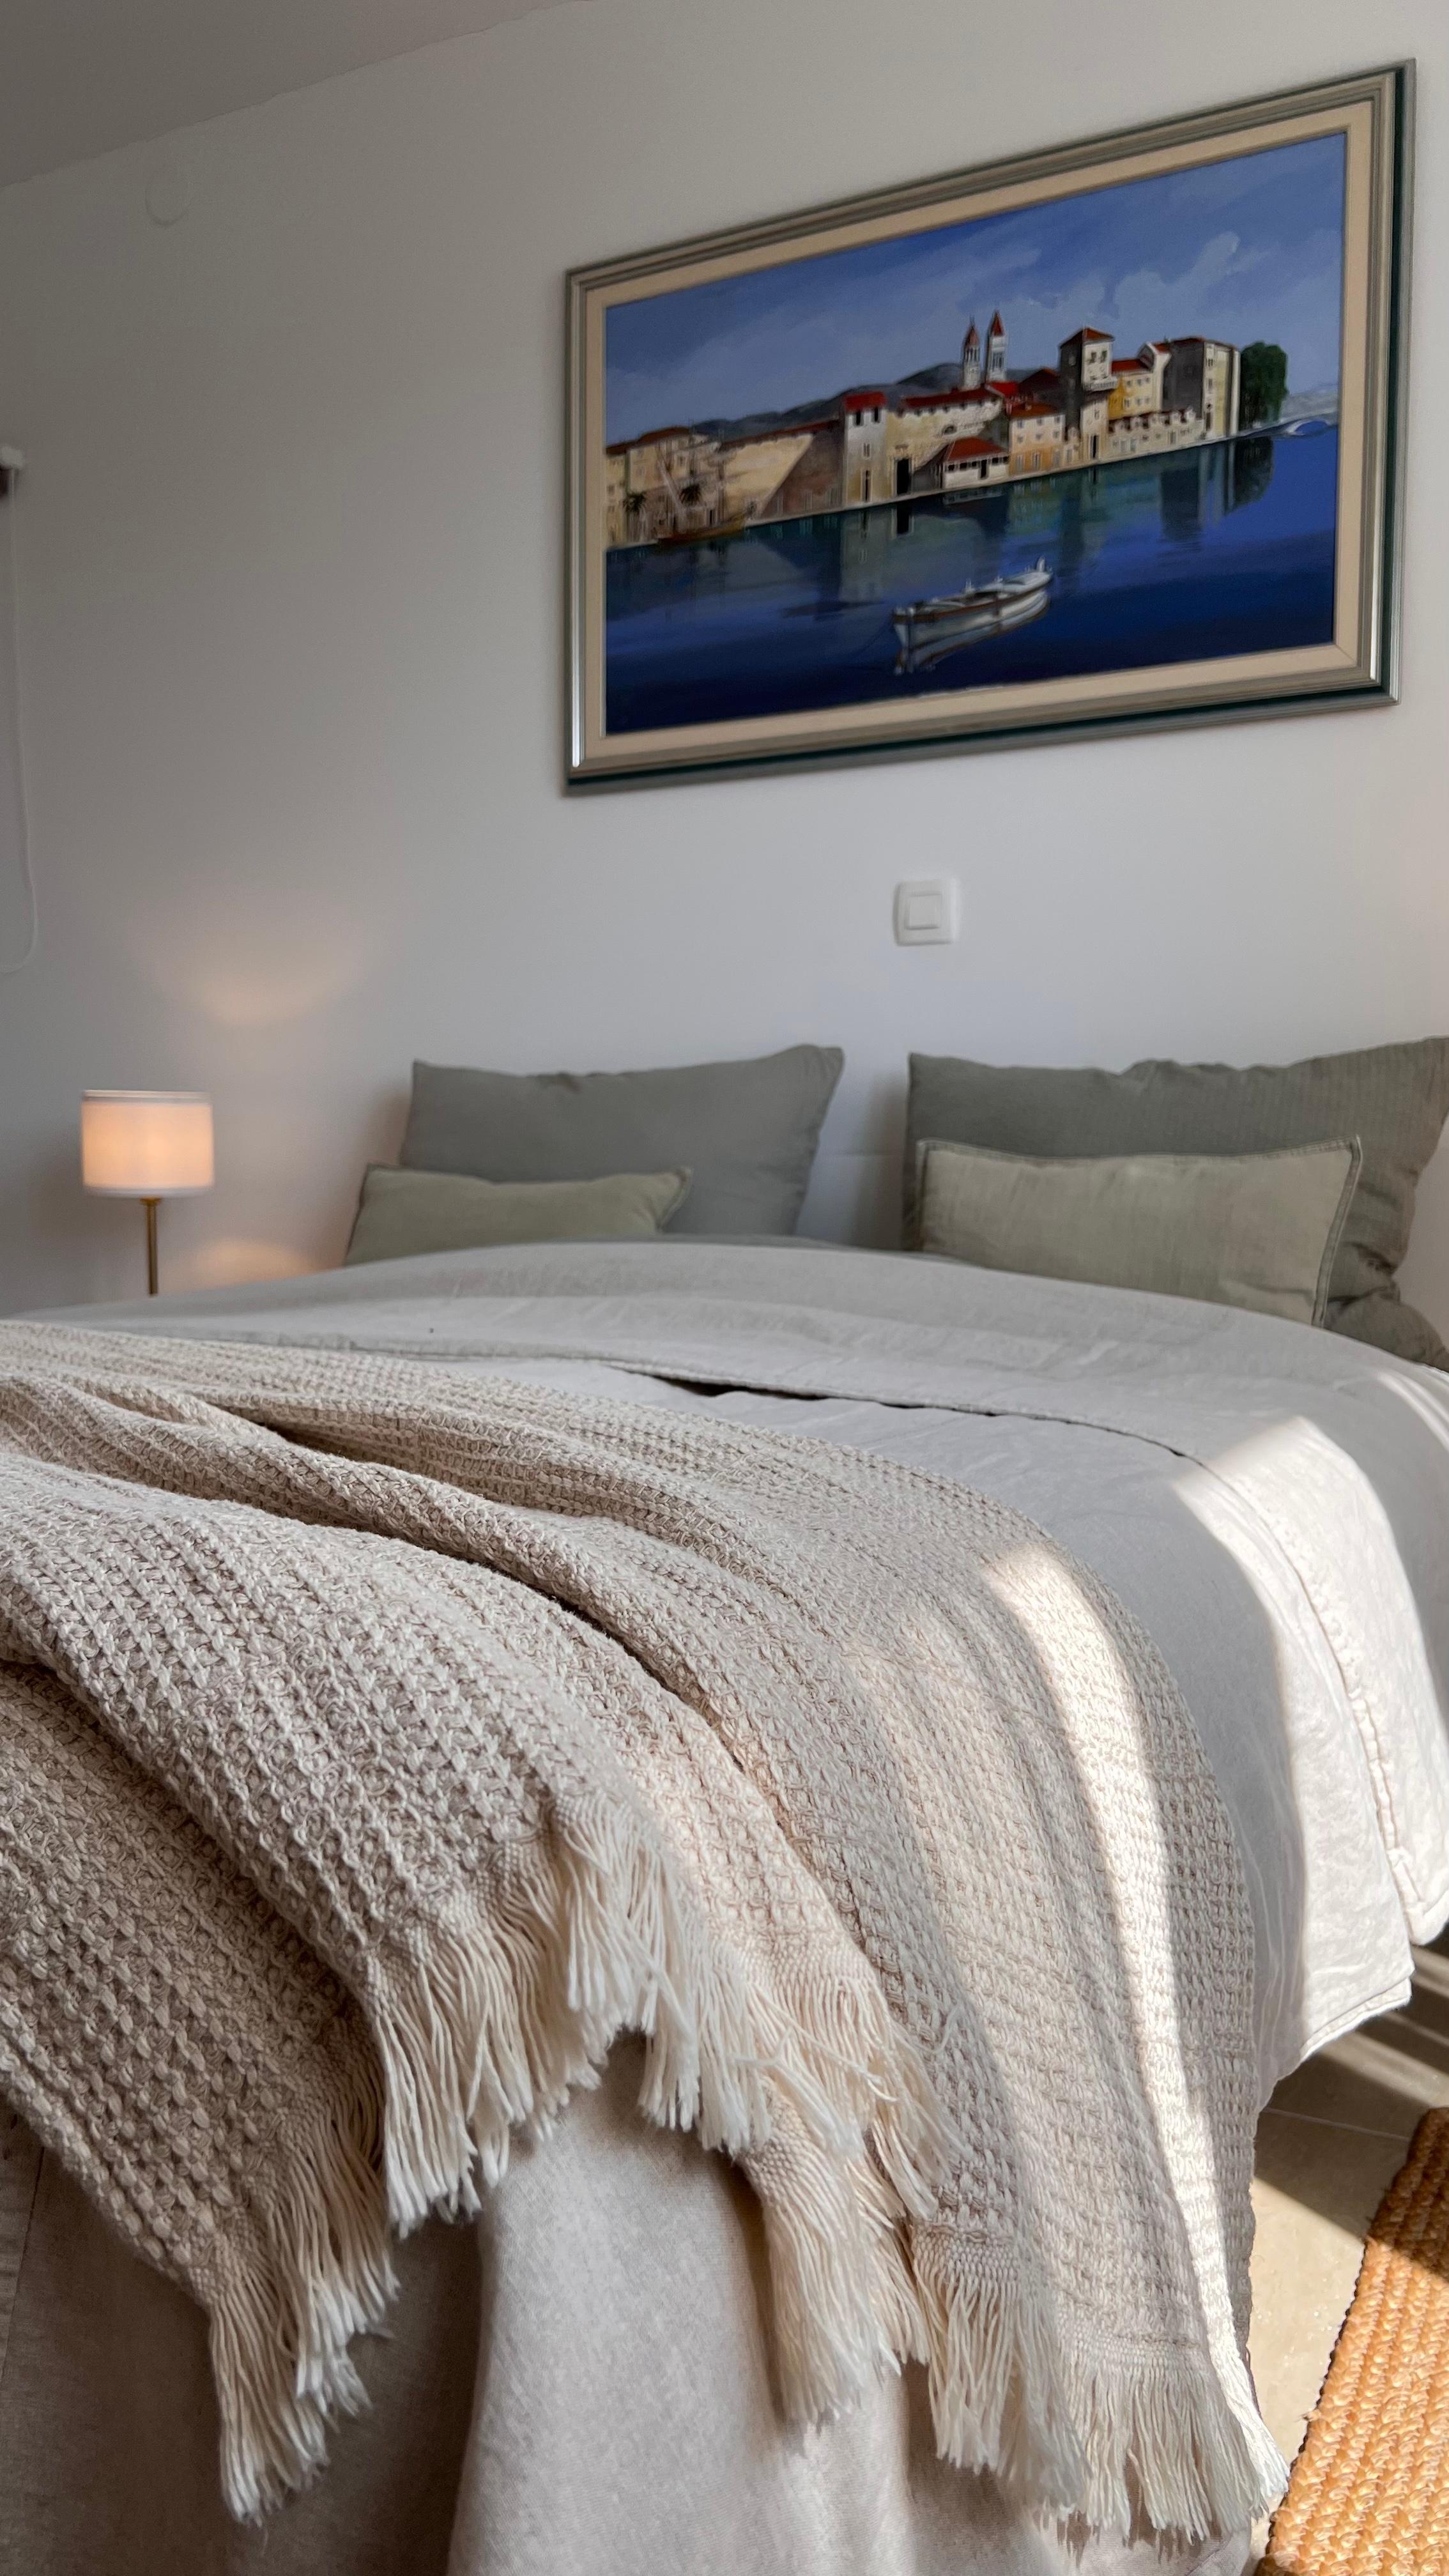 Schlafzimmer Nummer 2 @casa__mare 

Habt einen schönen Start in den Tag. 

#casamare #couchliebt #zuhauseammeer